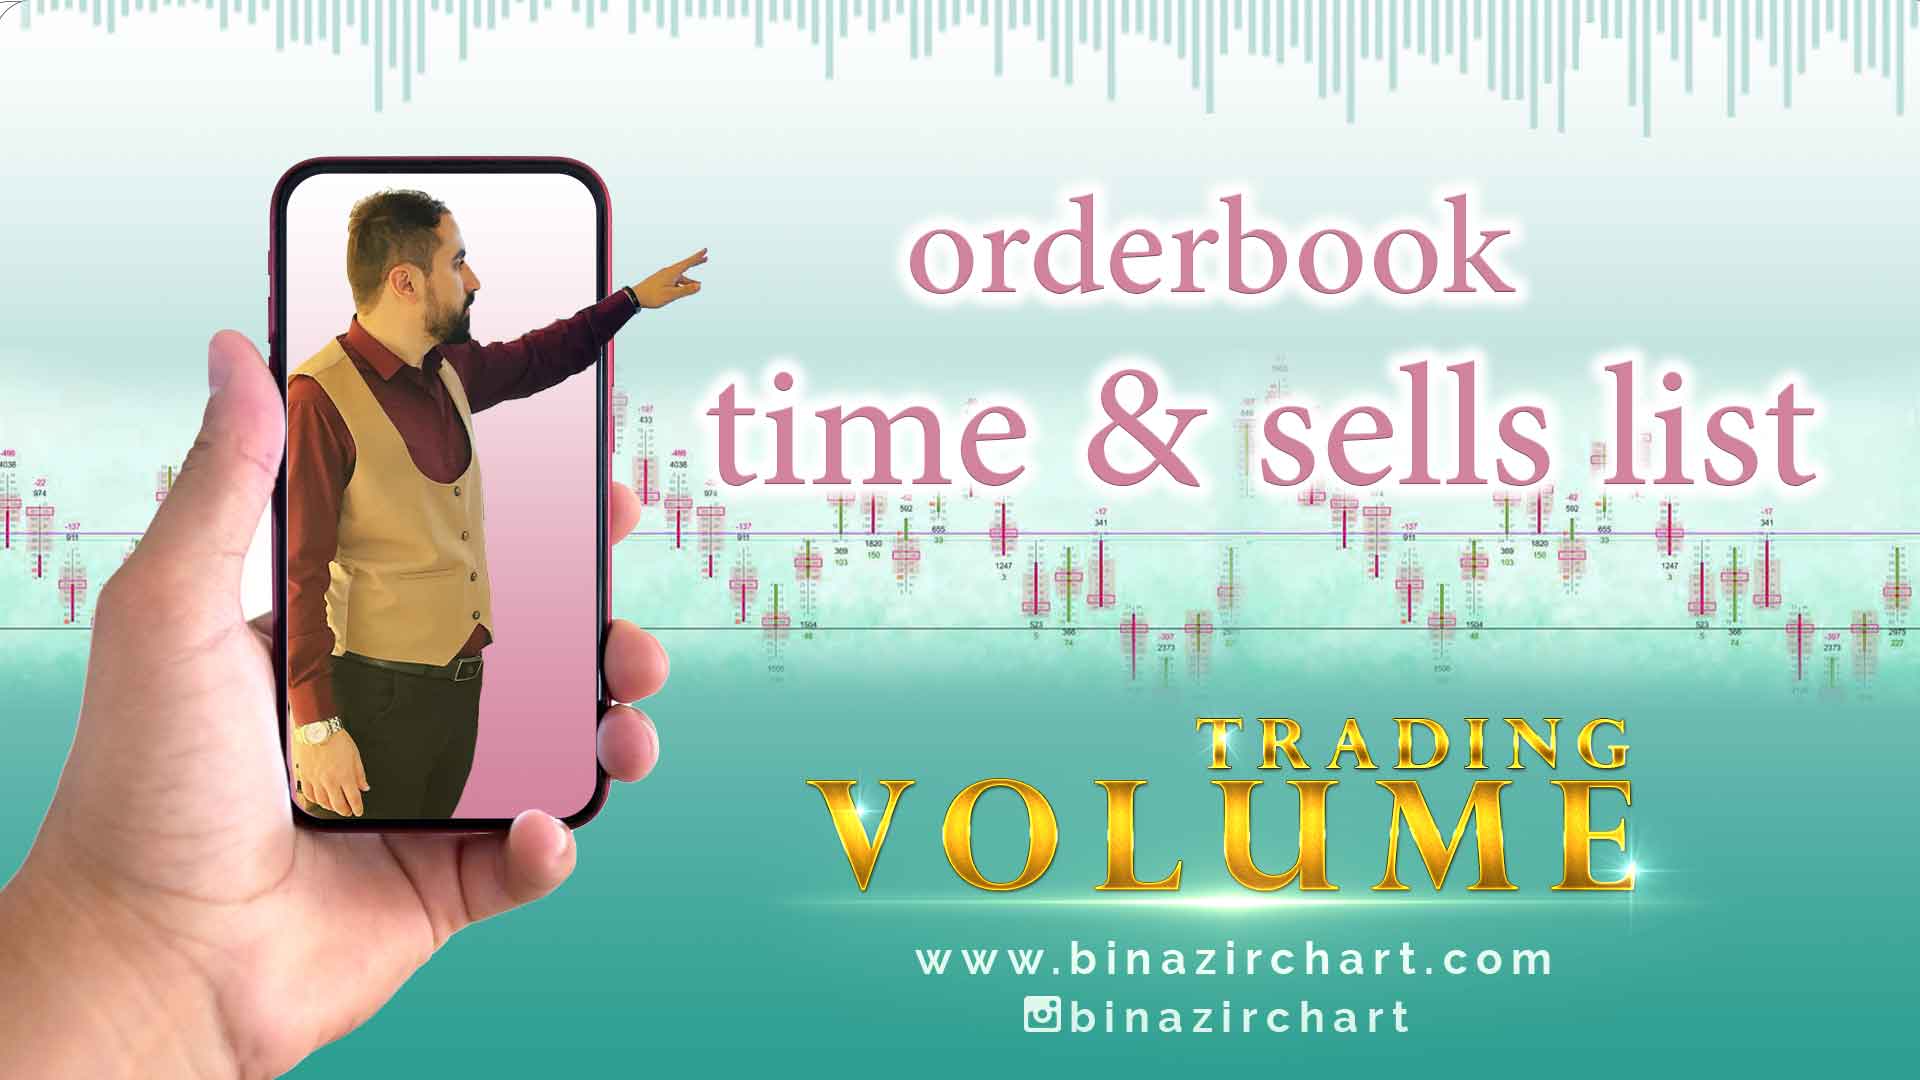 آموزش و آشنایی با اوردربوک (orderbook) و تایم اند سلز لیست (time & sells list)